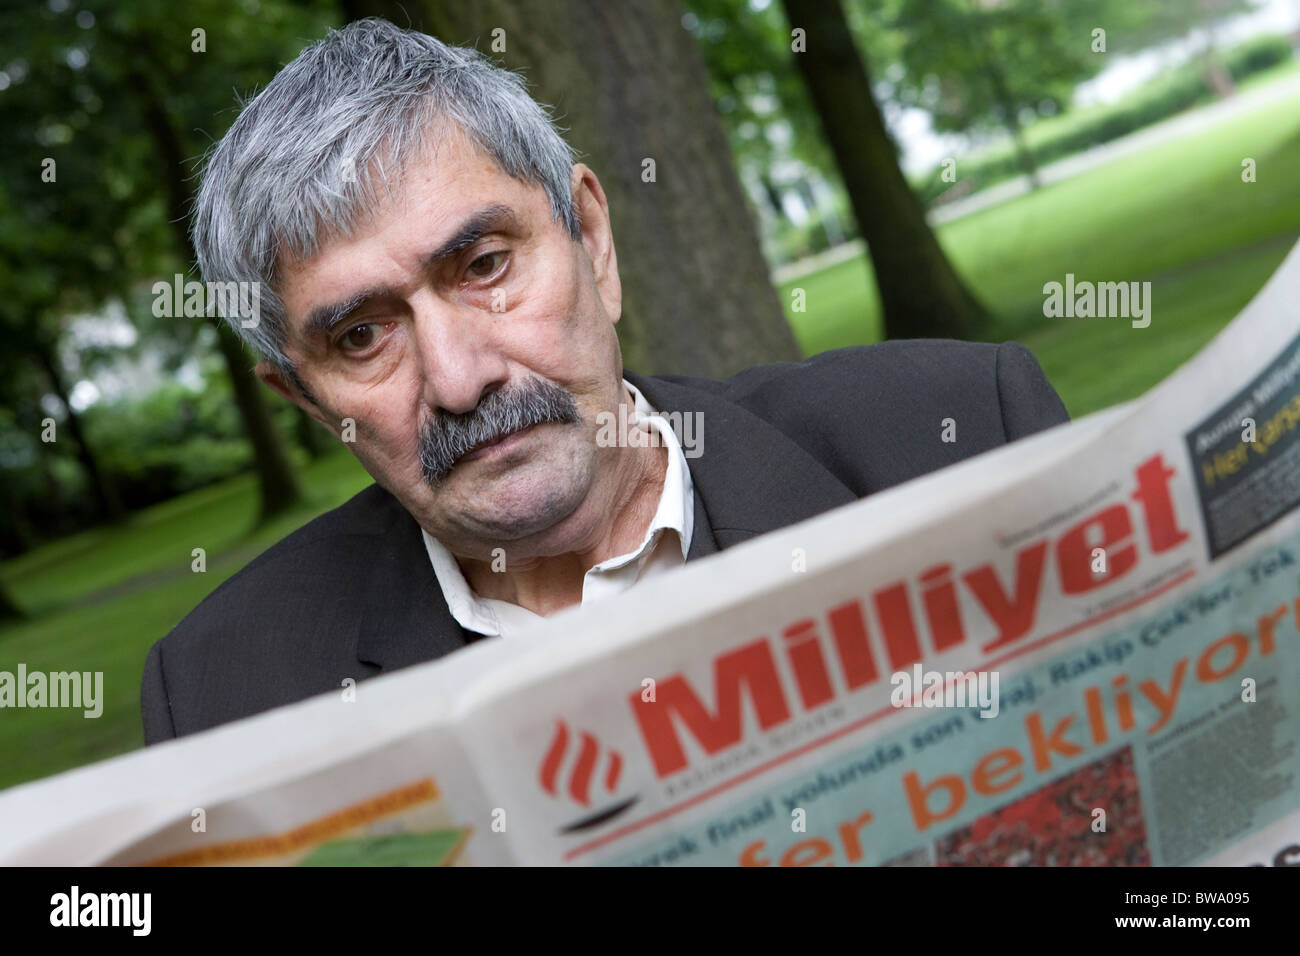 Hombre turco antiguo lee un periódico, Herne, Alemania Foto de stock